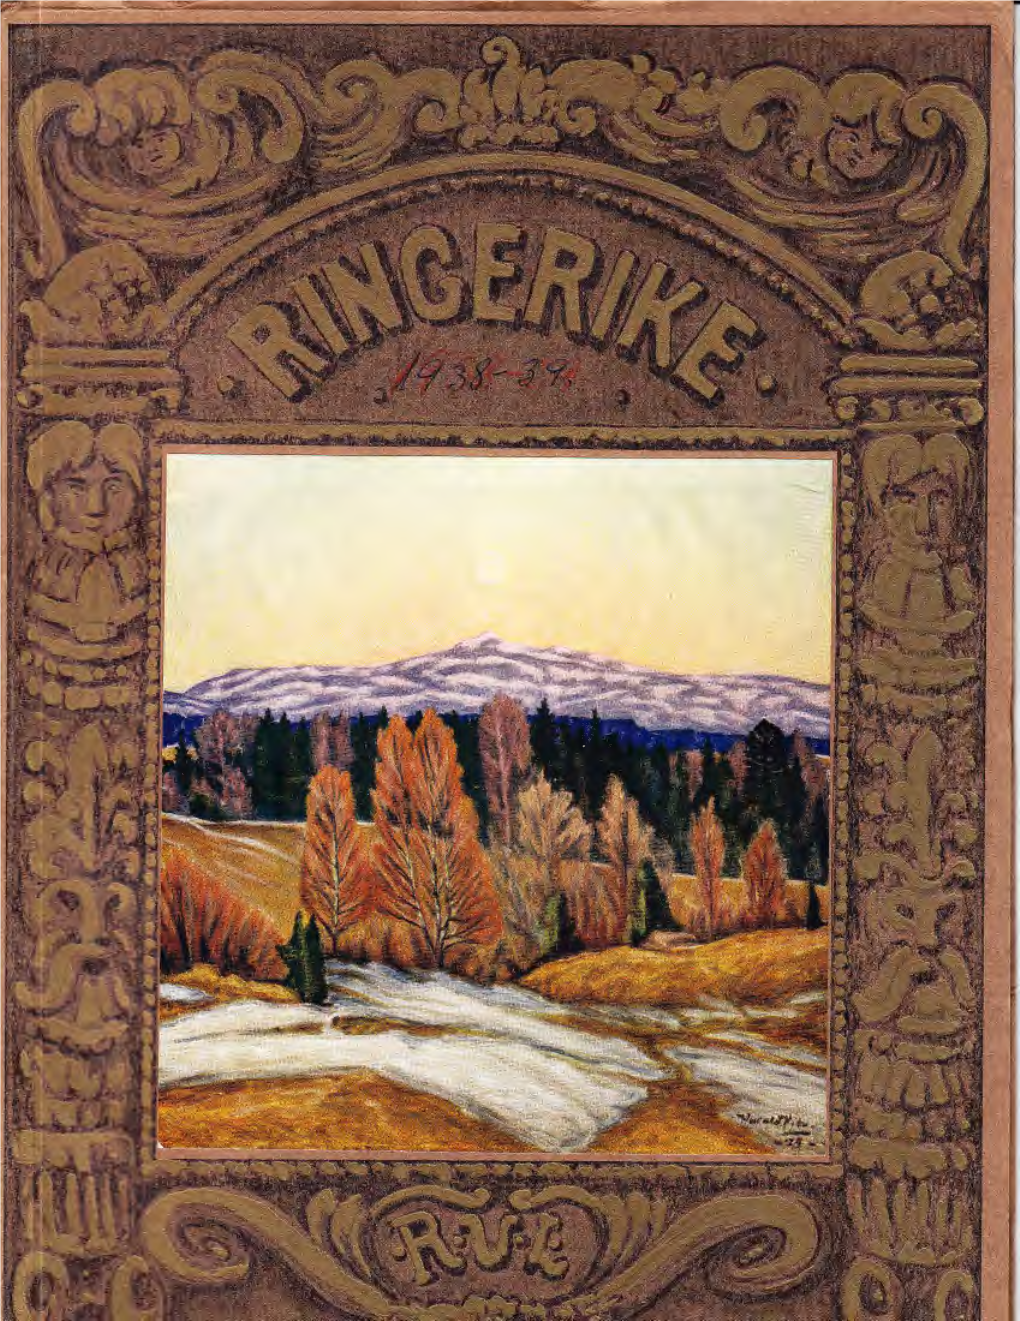 Heftet Ringerike 1938